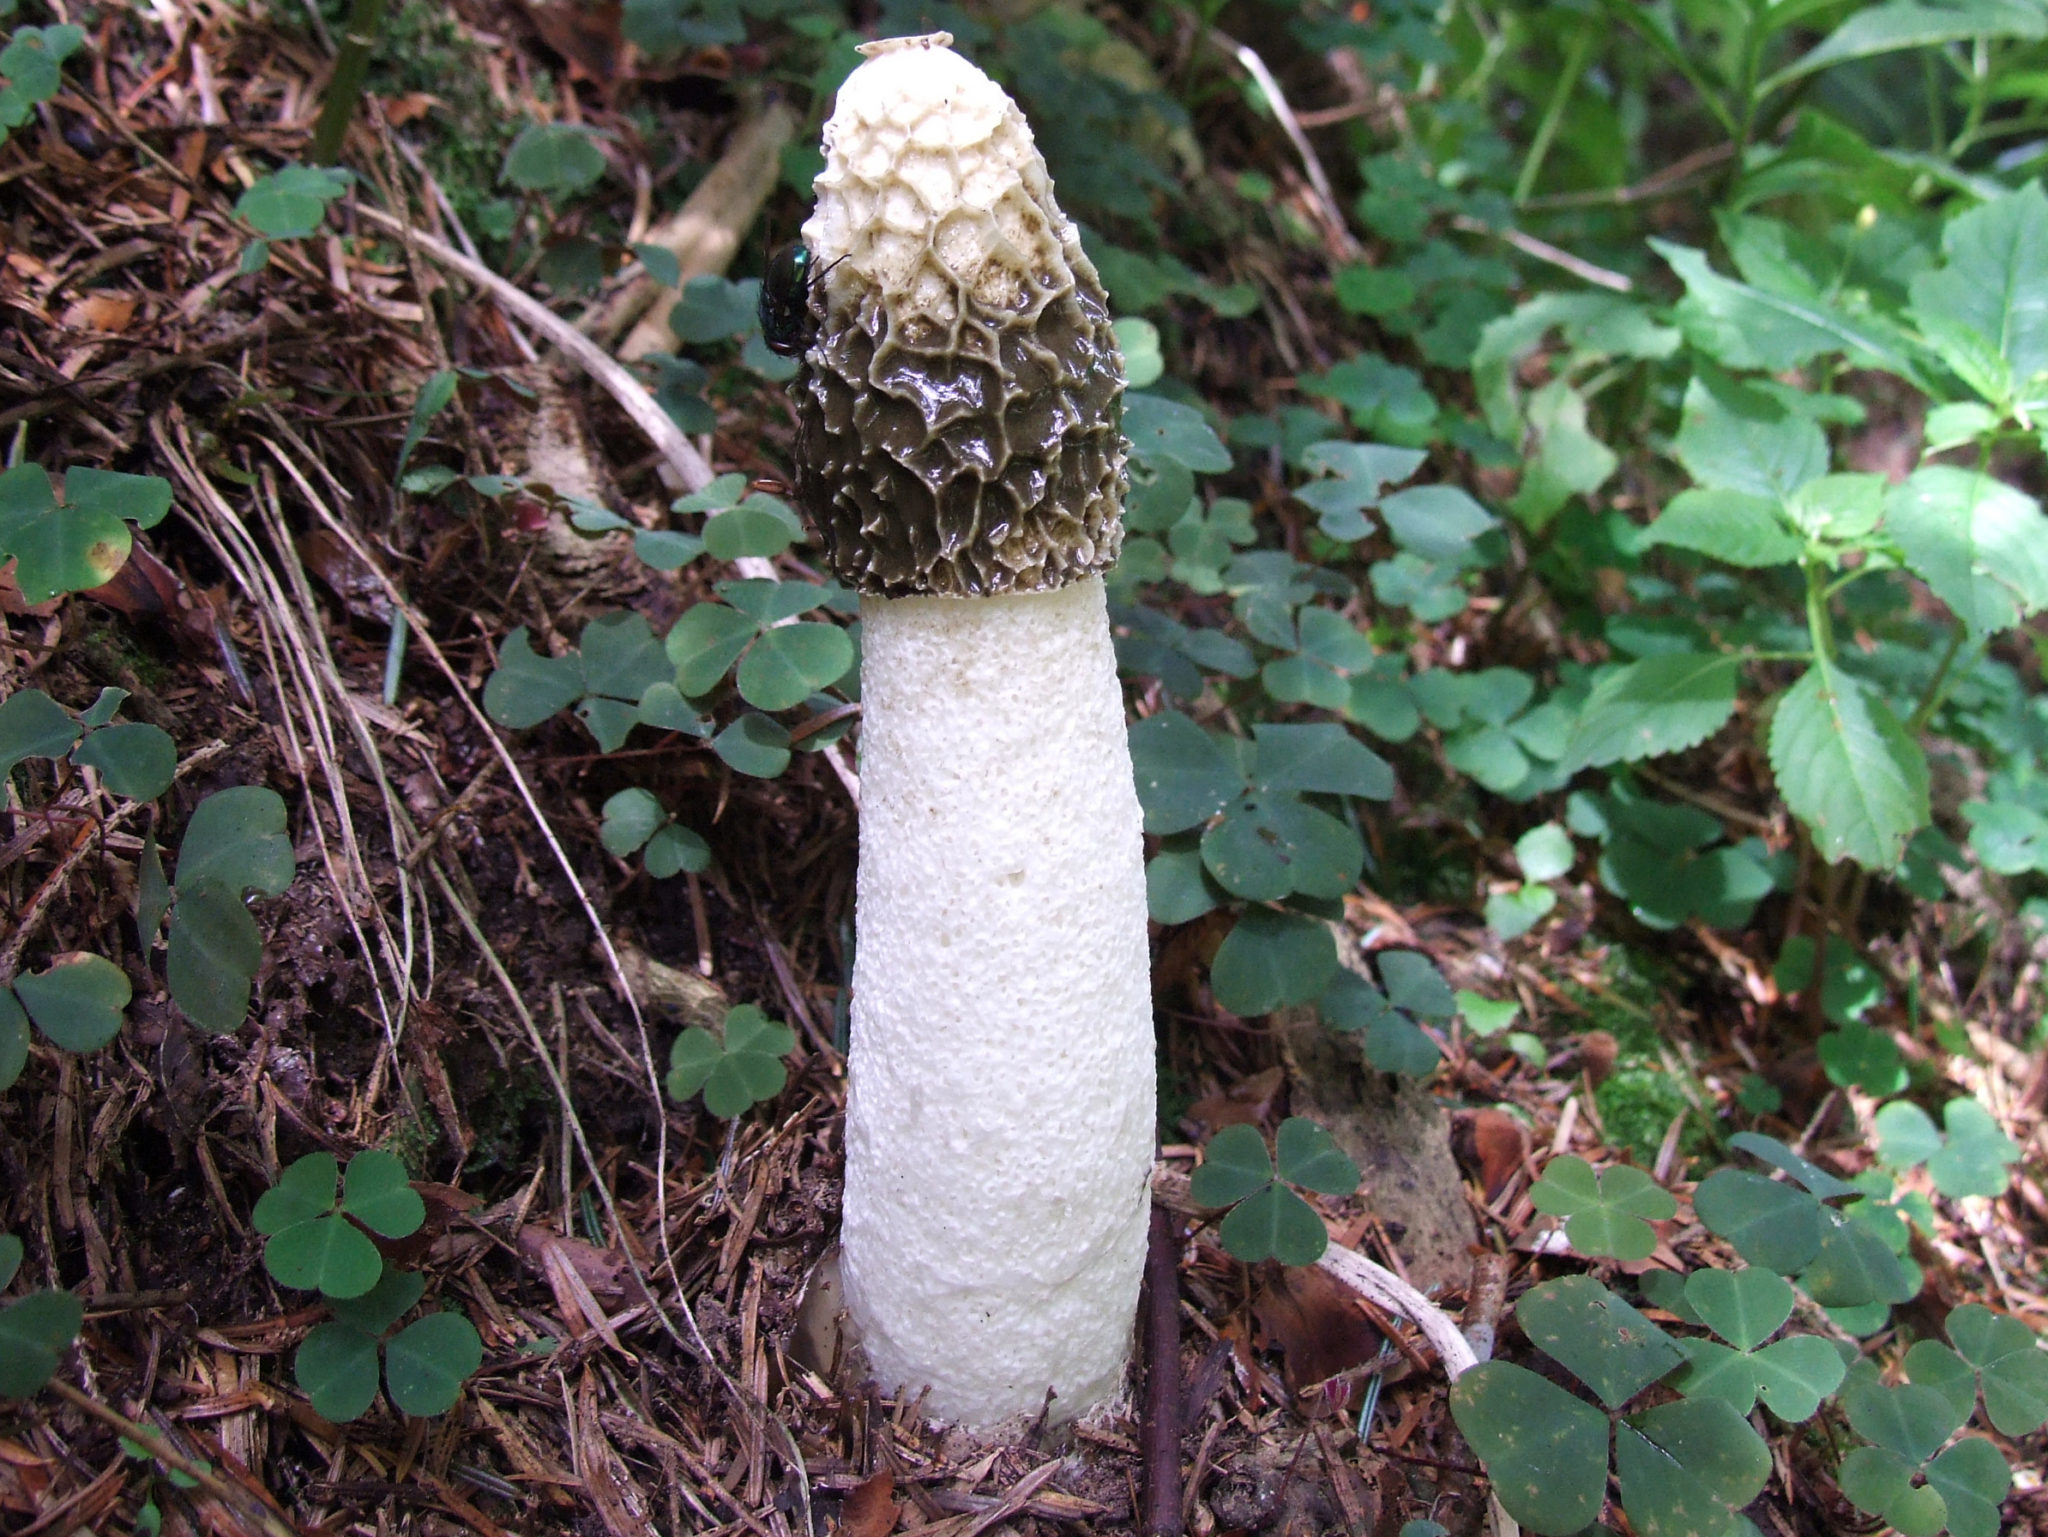 Phallus Impudicus All About The Stinky Penis Mushroom